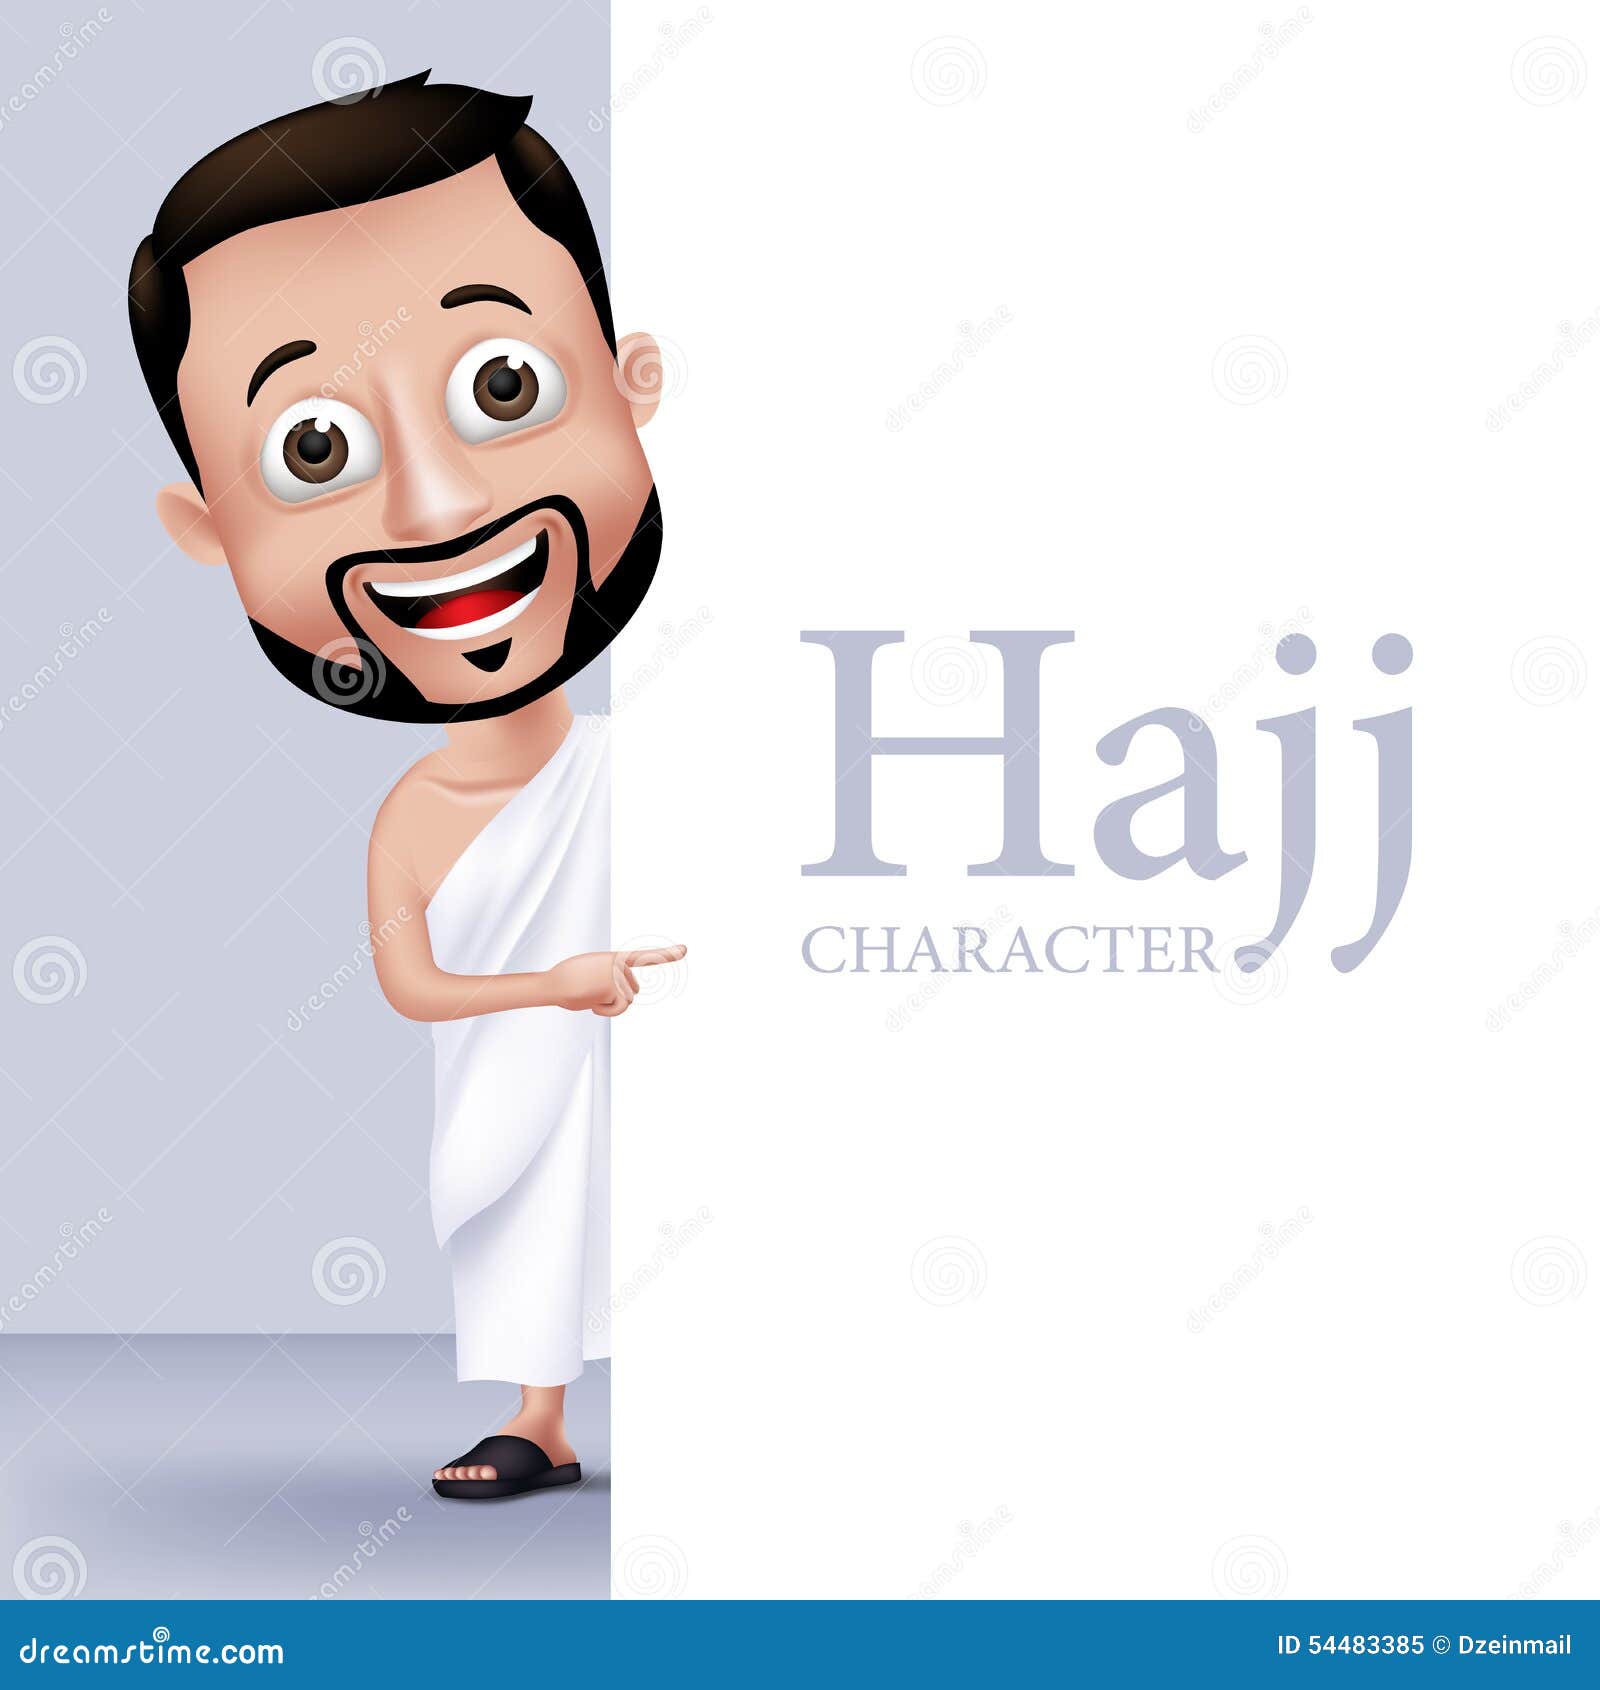 muslim man character performing hajj or umrah